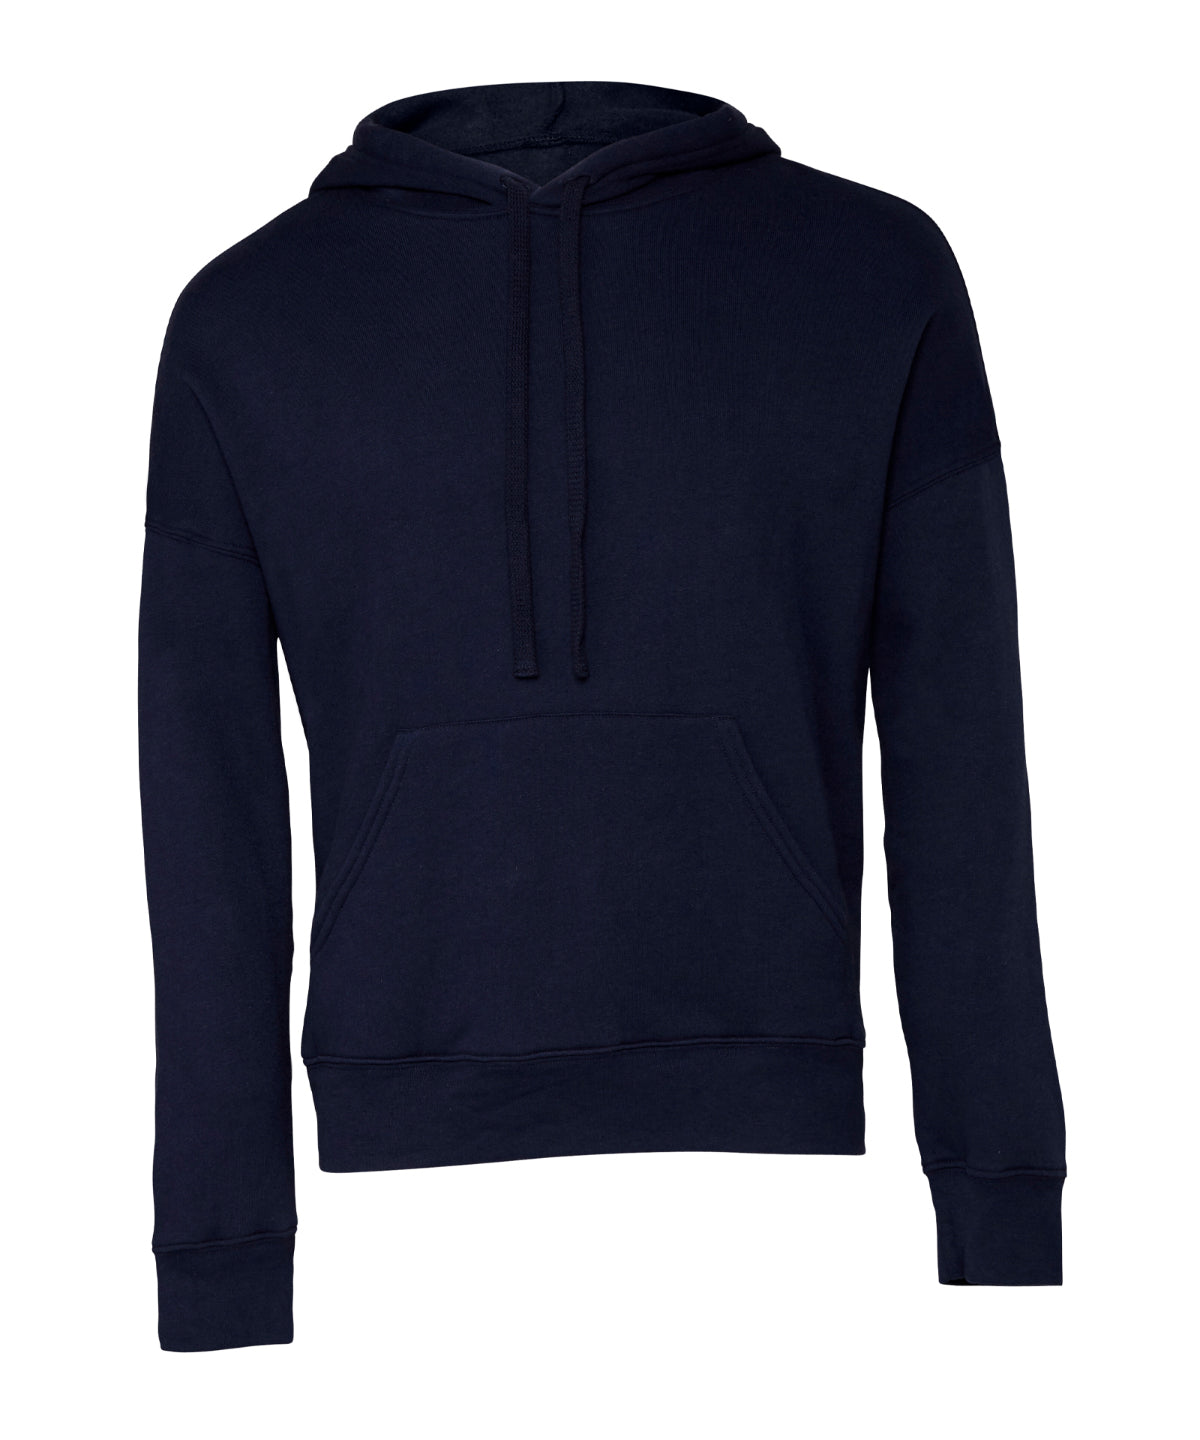 Personalised Hoodies - Black Bella Canvas Unisex sponge fleece pullover DTM hoodie